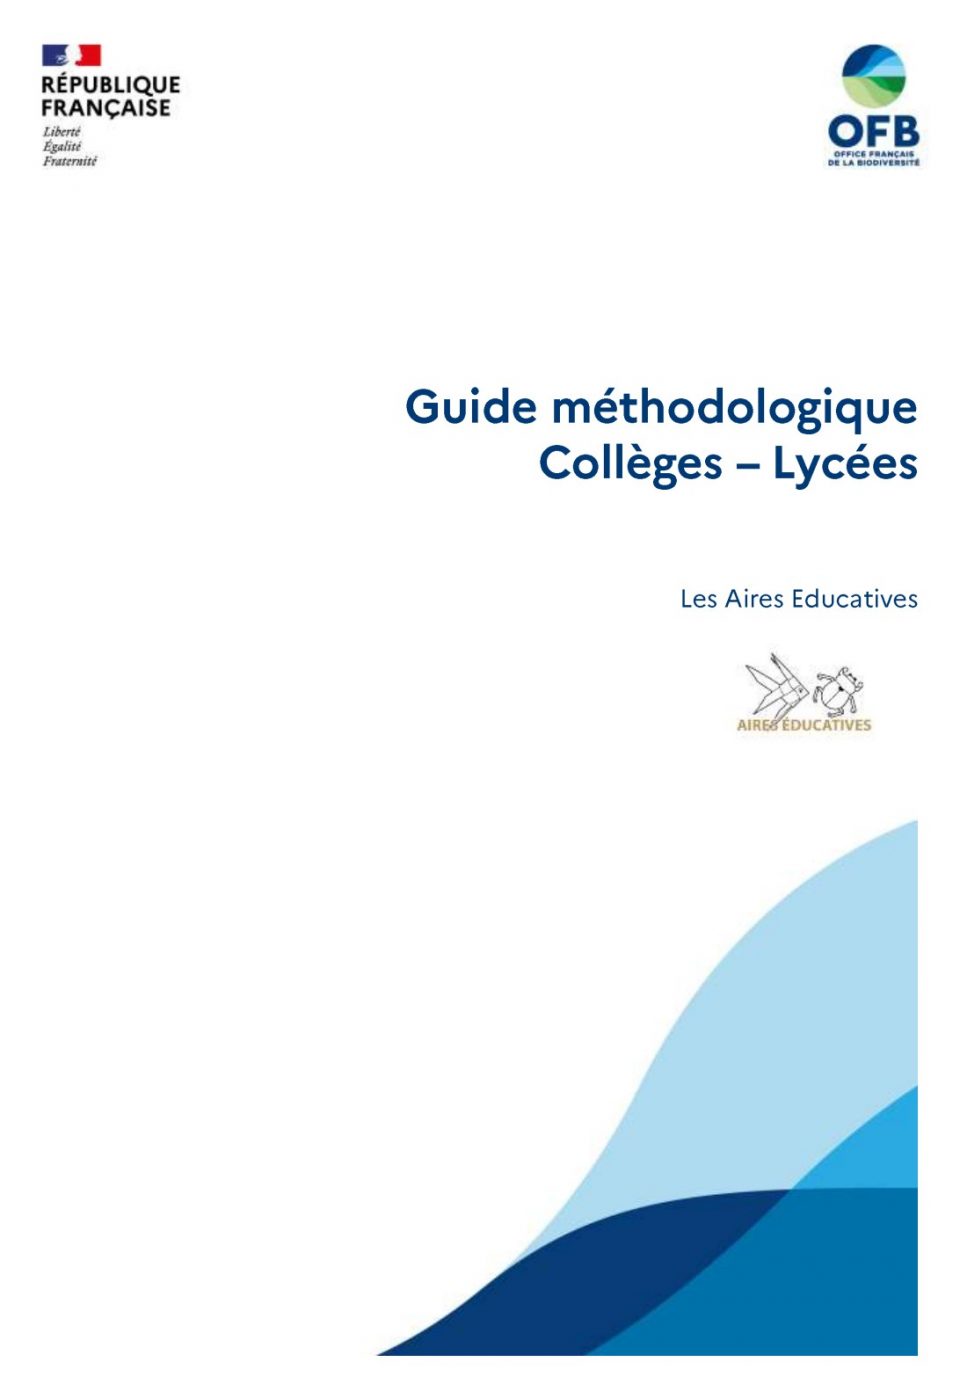 Les Aires Educatives - Guide méthodologique Collèges - Lycées